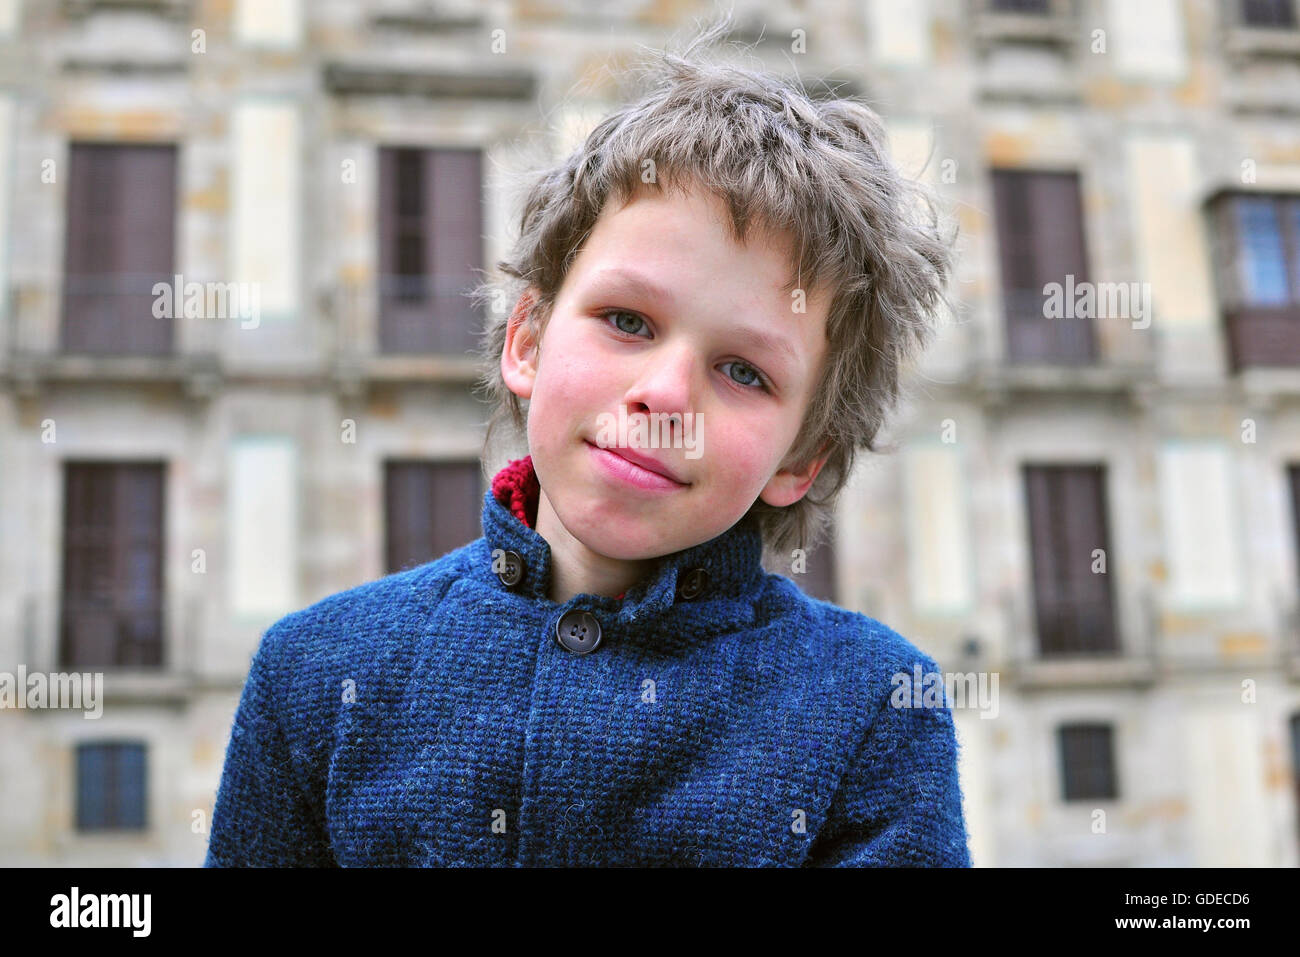 Portrait eines klugen jungen auf dem Hintergrund der Stadt Stockfoto